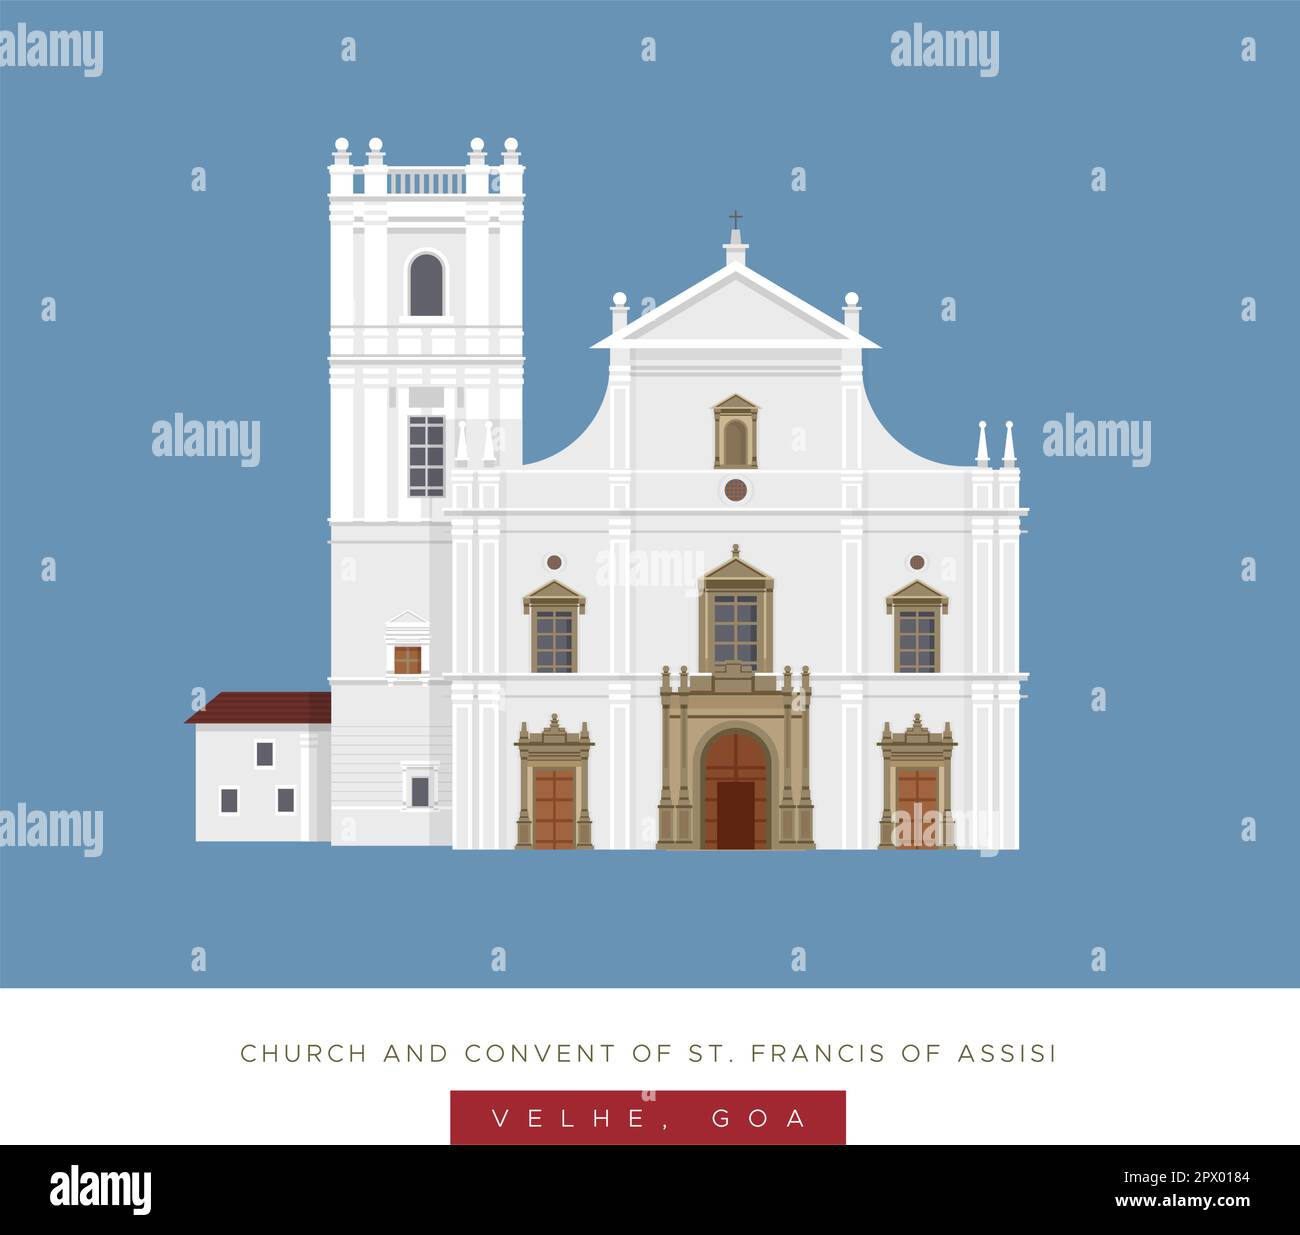 Chiesa e Convento di San Francis of Assisi - Goa - Stock Illustration come file EPS 10 Illustrazione Vettoriale